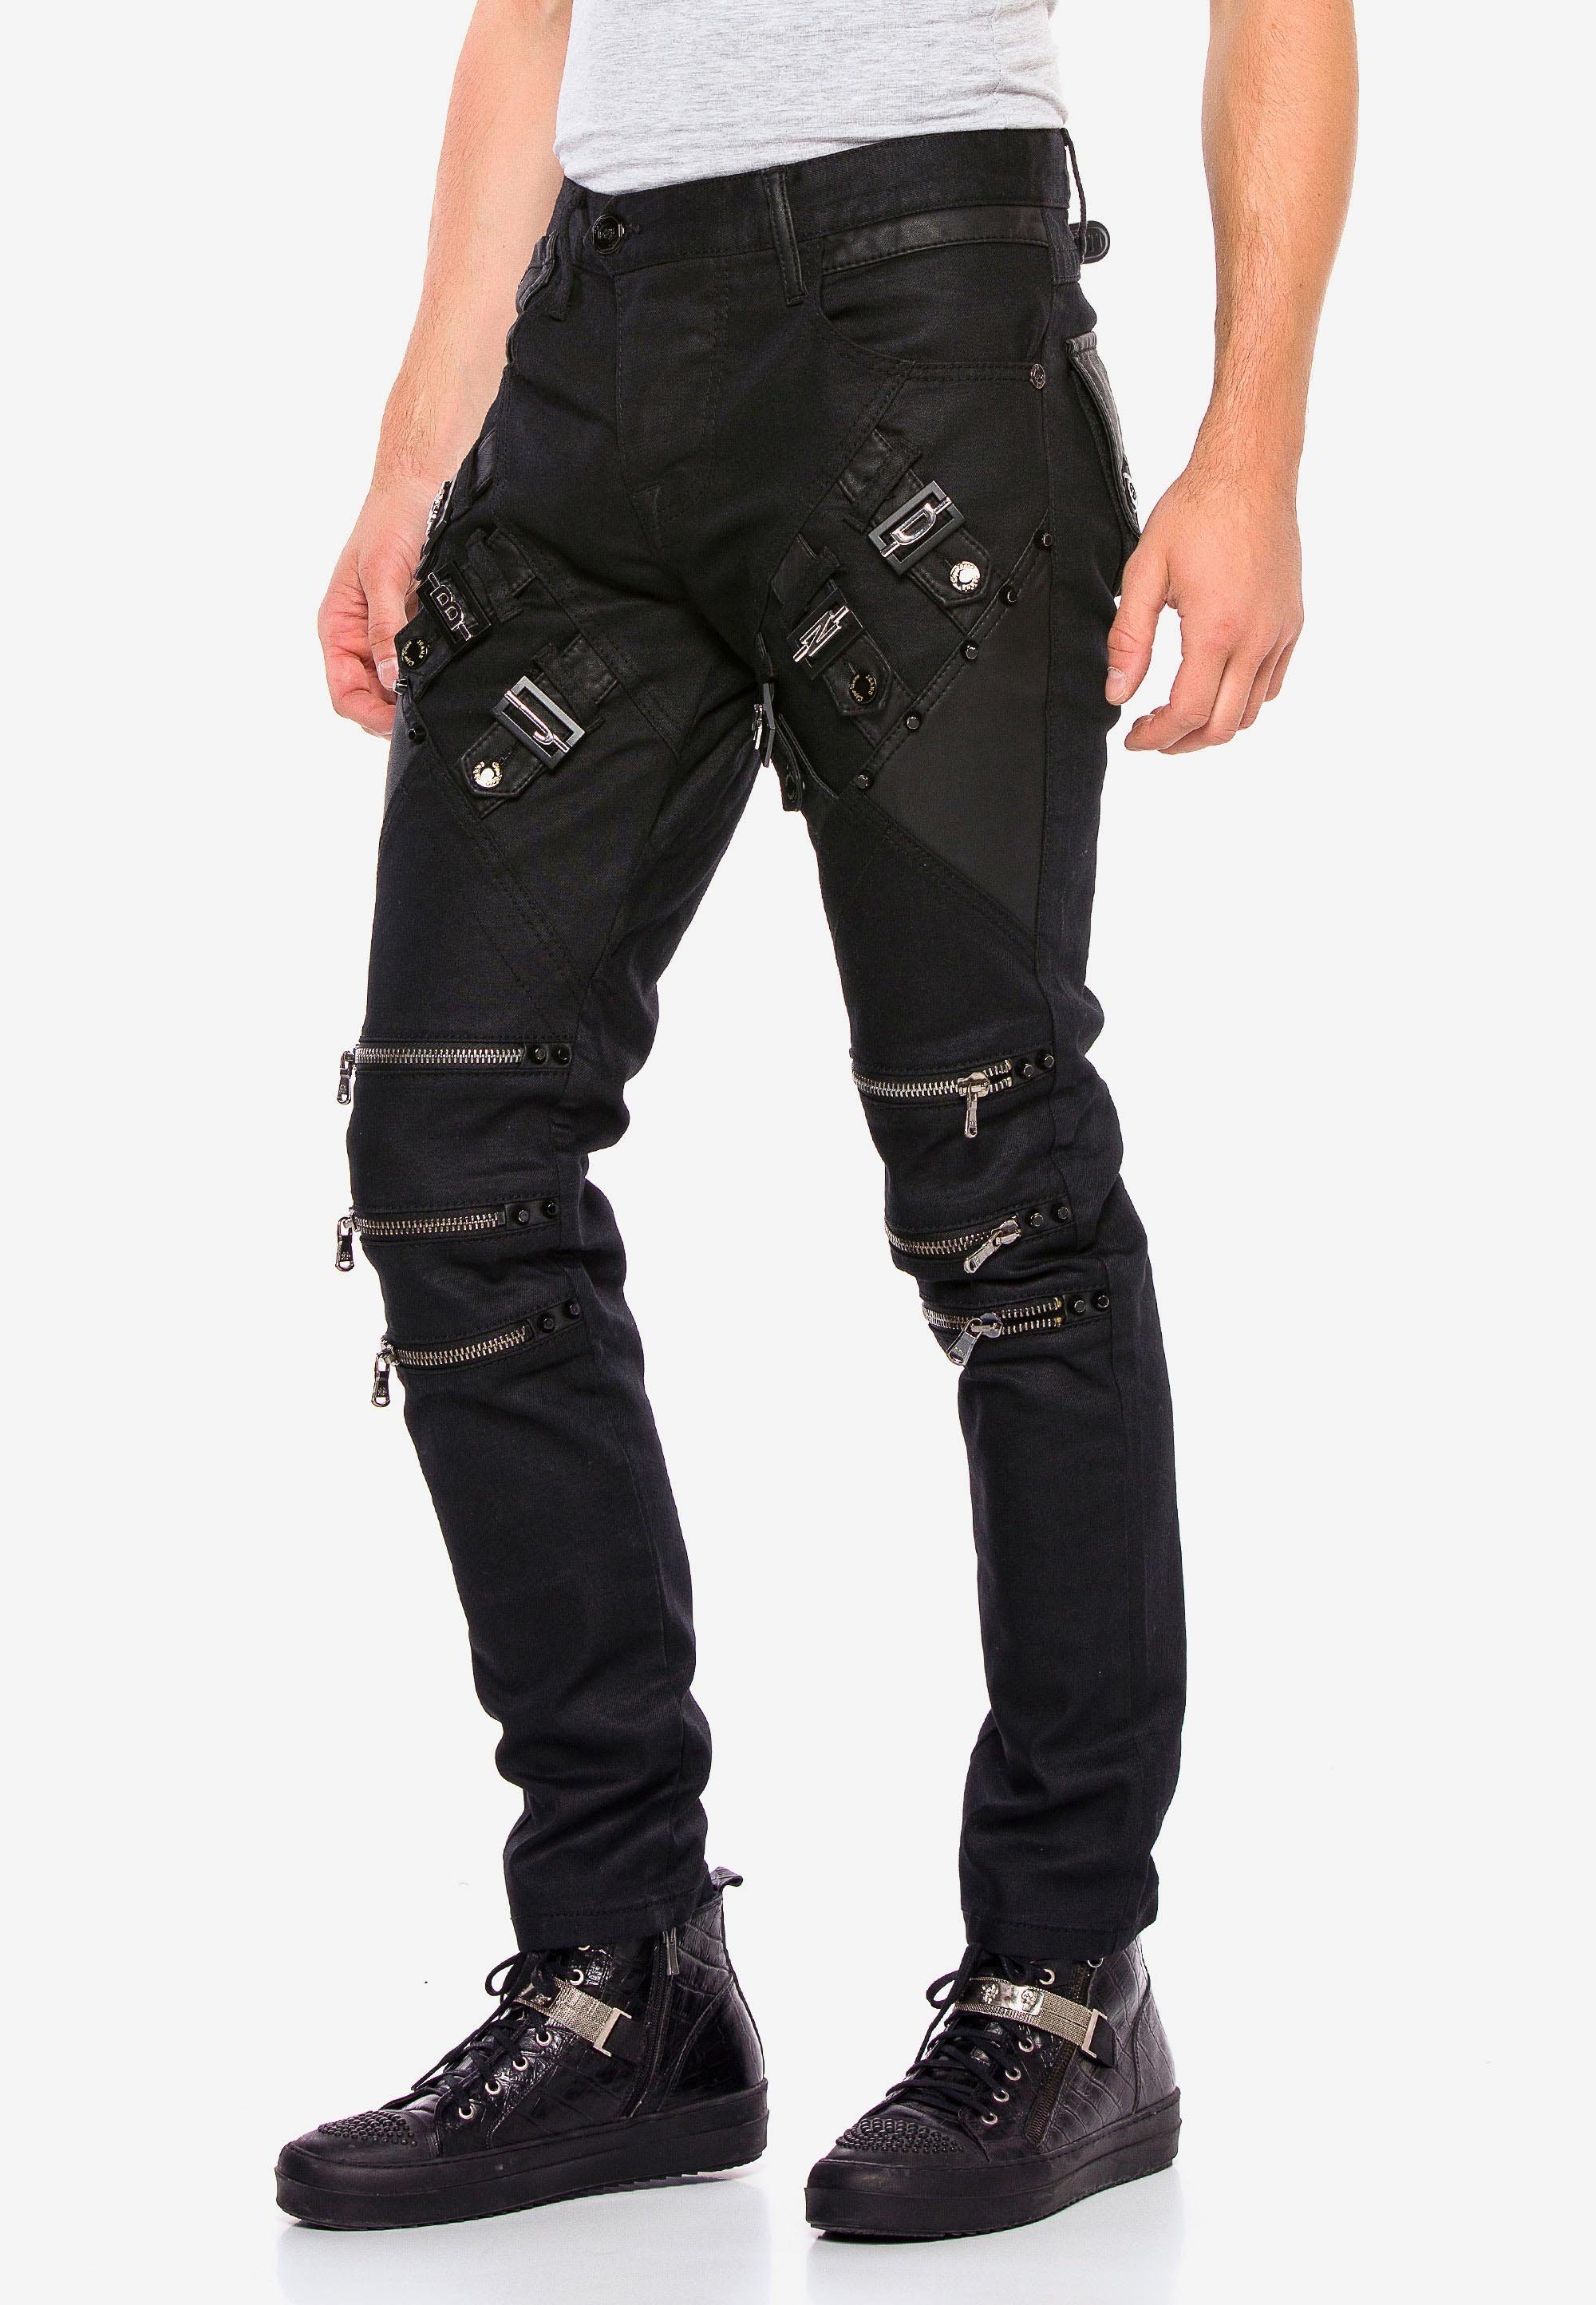 Straight-Jeans coolen Baxx Reißverschlussapplikationen Cipo & mit